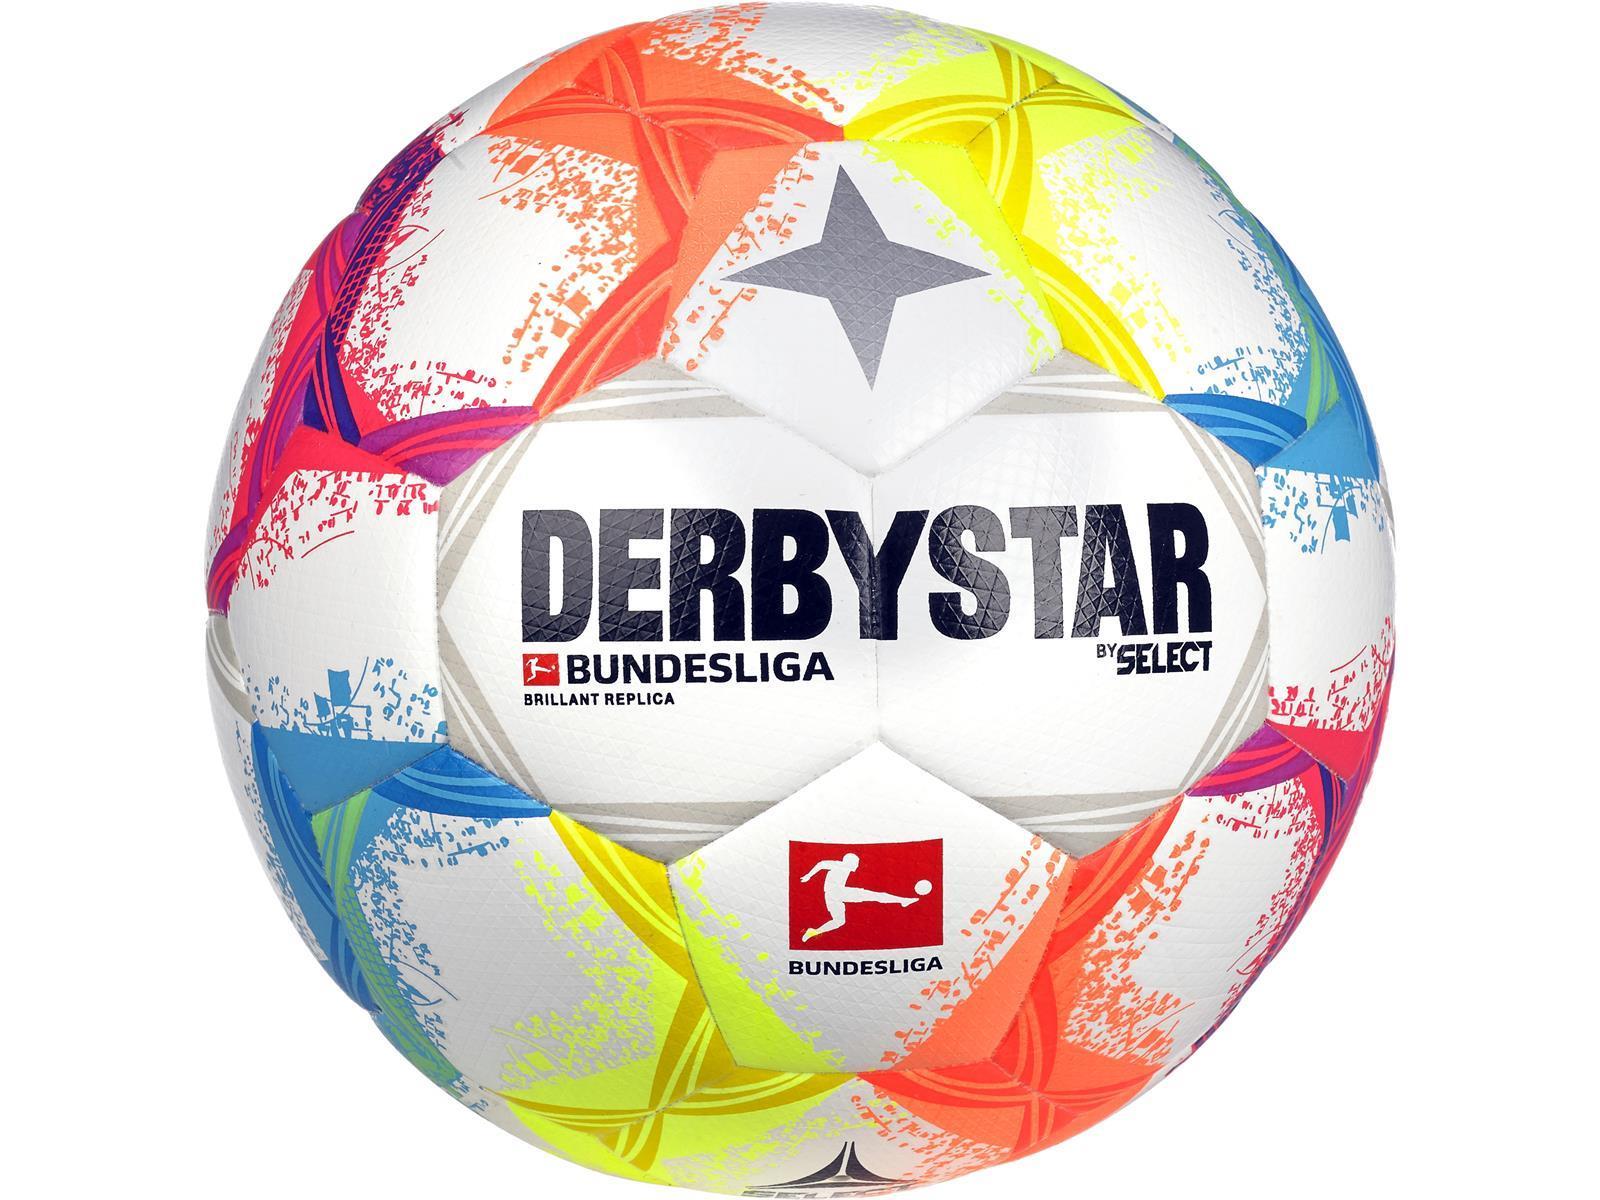 Derbystar Bundesliga Brillant Replica v22 Trainingsball 2022/23 Gr. 5